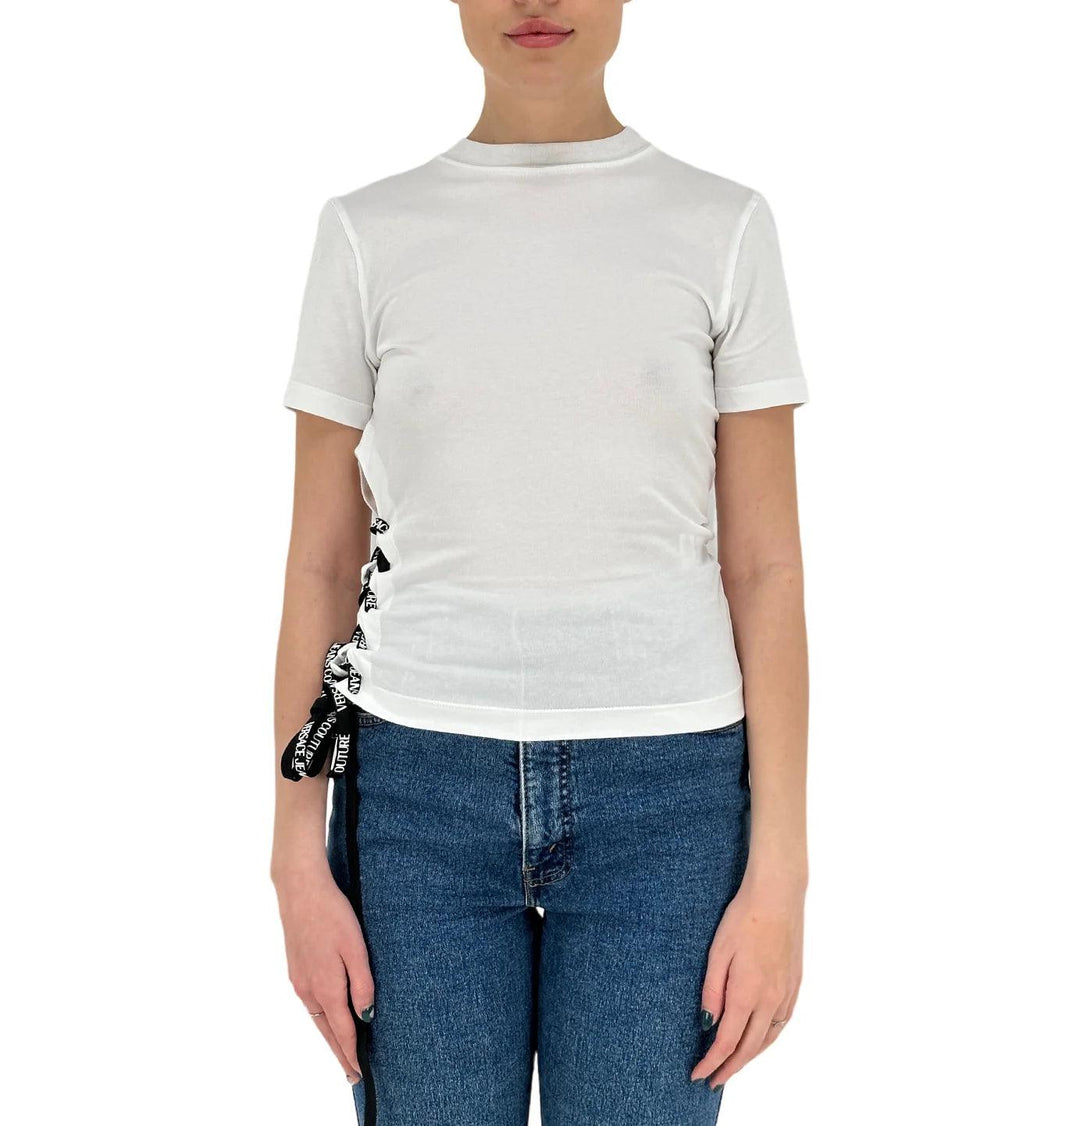 Versace t Shirt mc, 74hah615.j0020, Jersey, g03 Bianco, Bassiniboutique.it, 2023 p/e